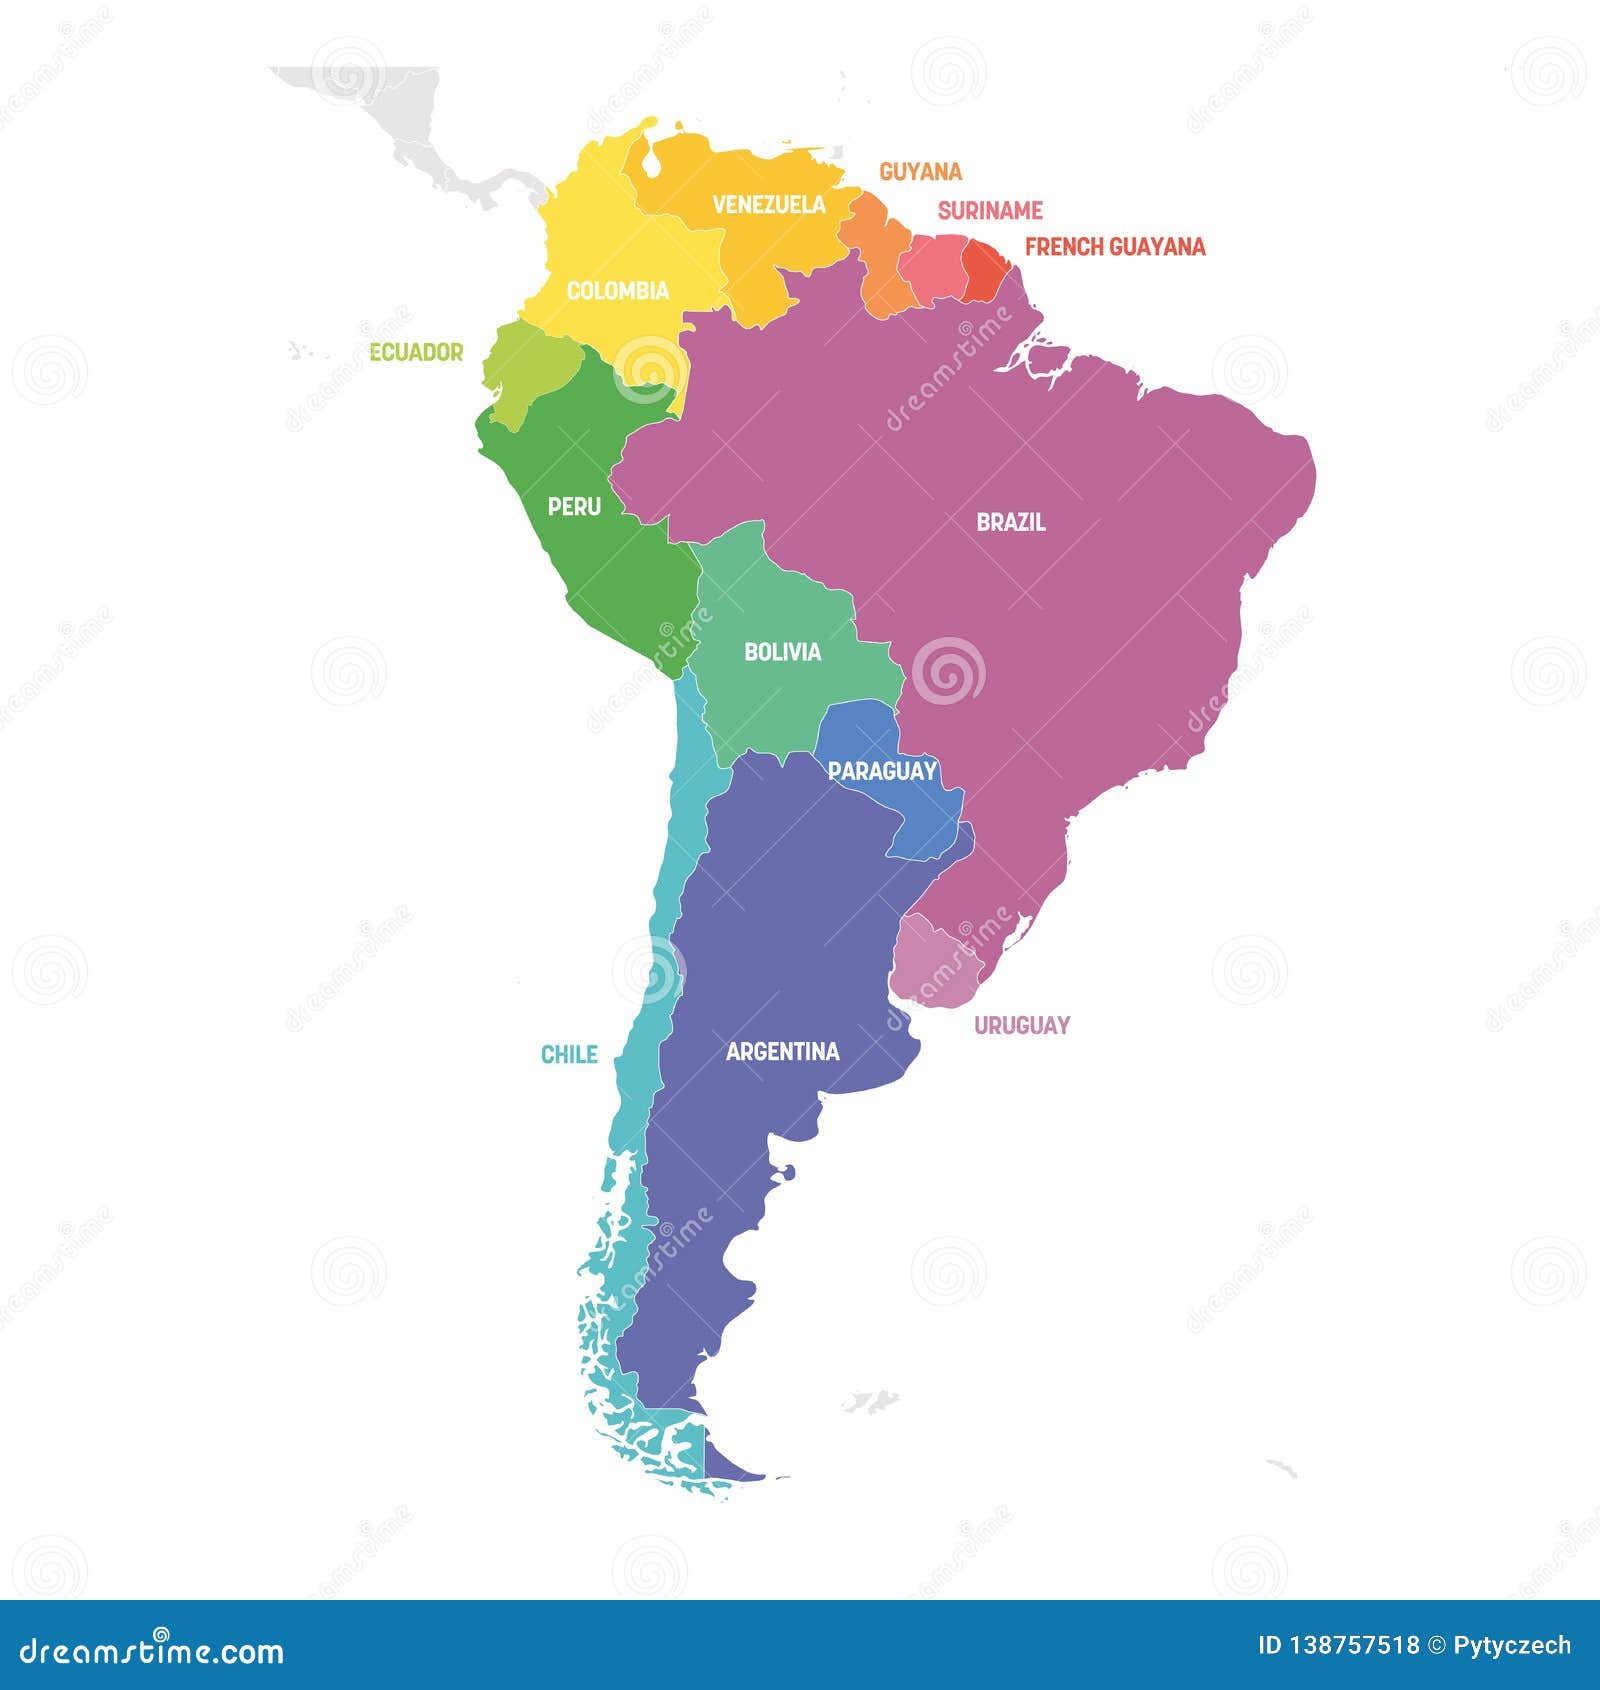 South american country. Страны Южной Америки. Карта Южной Америки. Регионы Южной Америки. Политическая карта Южной Америки.